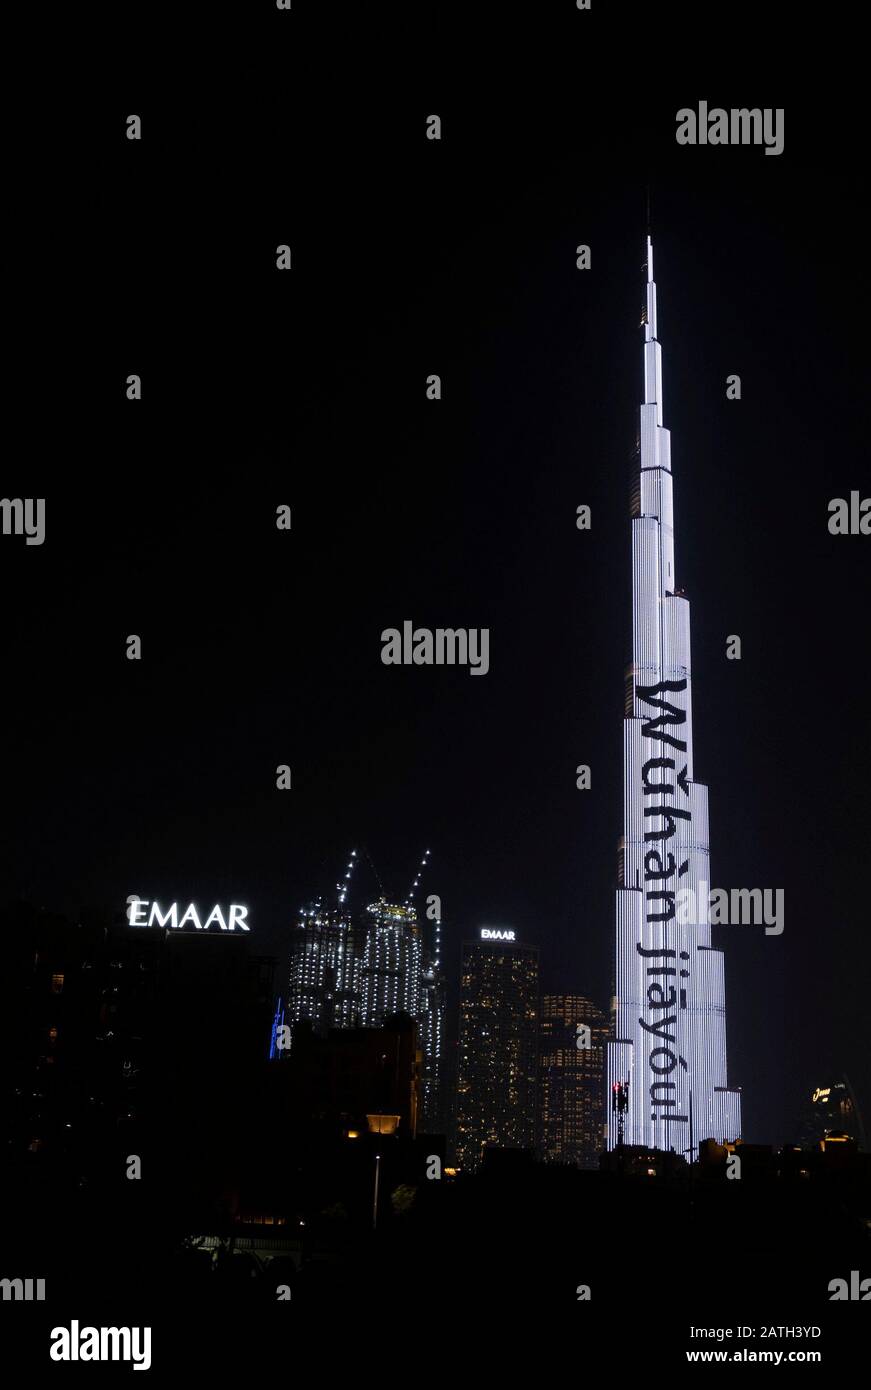 Dubai, VAE. Februar 2020. Burj Khalifa wird in chinesischen Phonetikalphabeten mit Schriftzügen beleuchtet, die "Wuhan, komm los" in Downtown Dubai, den Vereinigten Arabischen Emiraten (VAE), 2. Februar 2020 bedeuten, um China im Kampf gegen den Roman Coronavirus aufzuheitern. Kredit: Xinhua/Alamy Live News Stockfoto